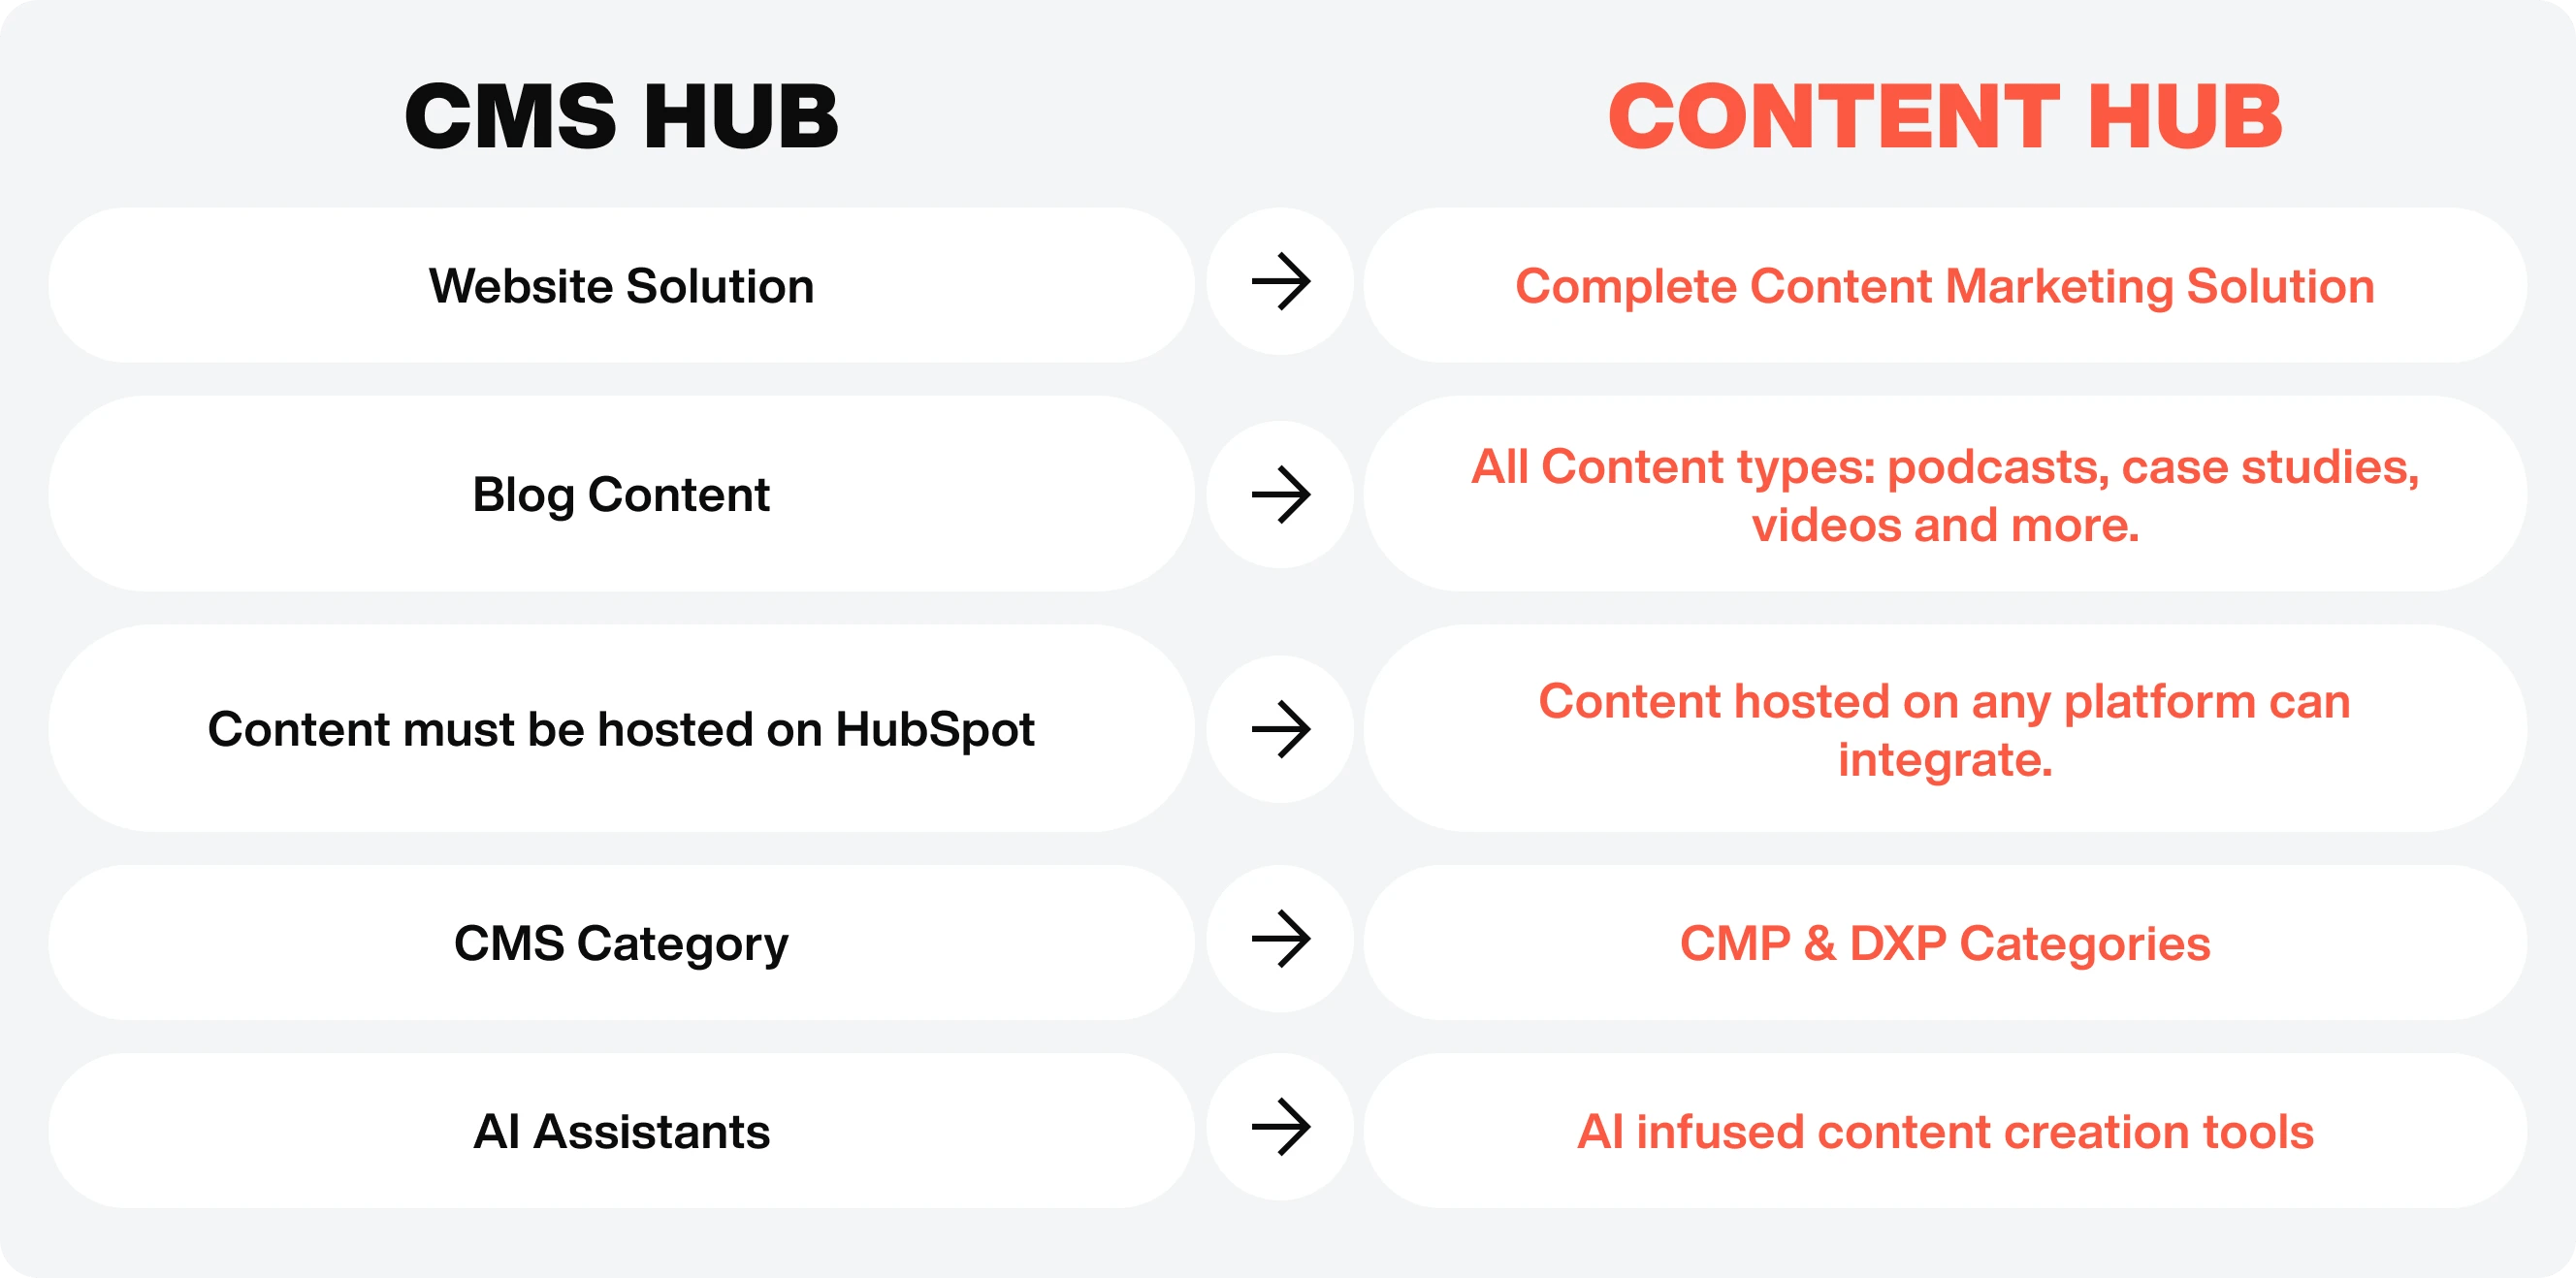 CMS Hub > Content Hub